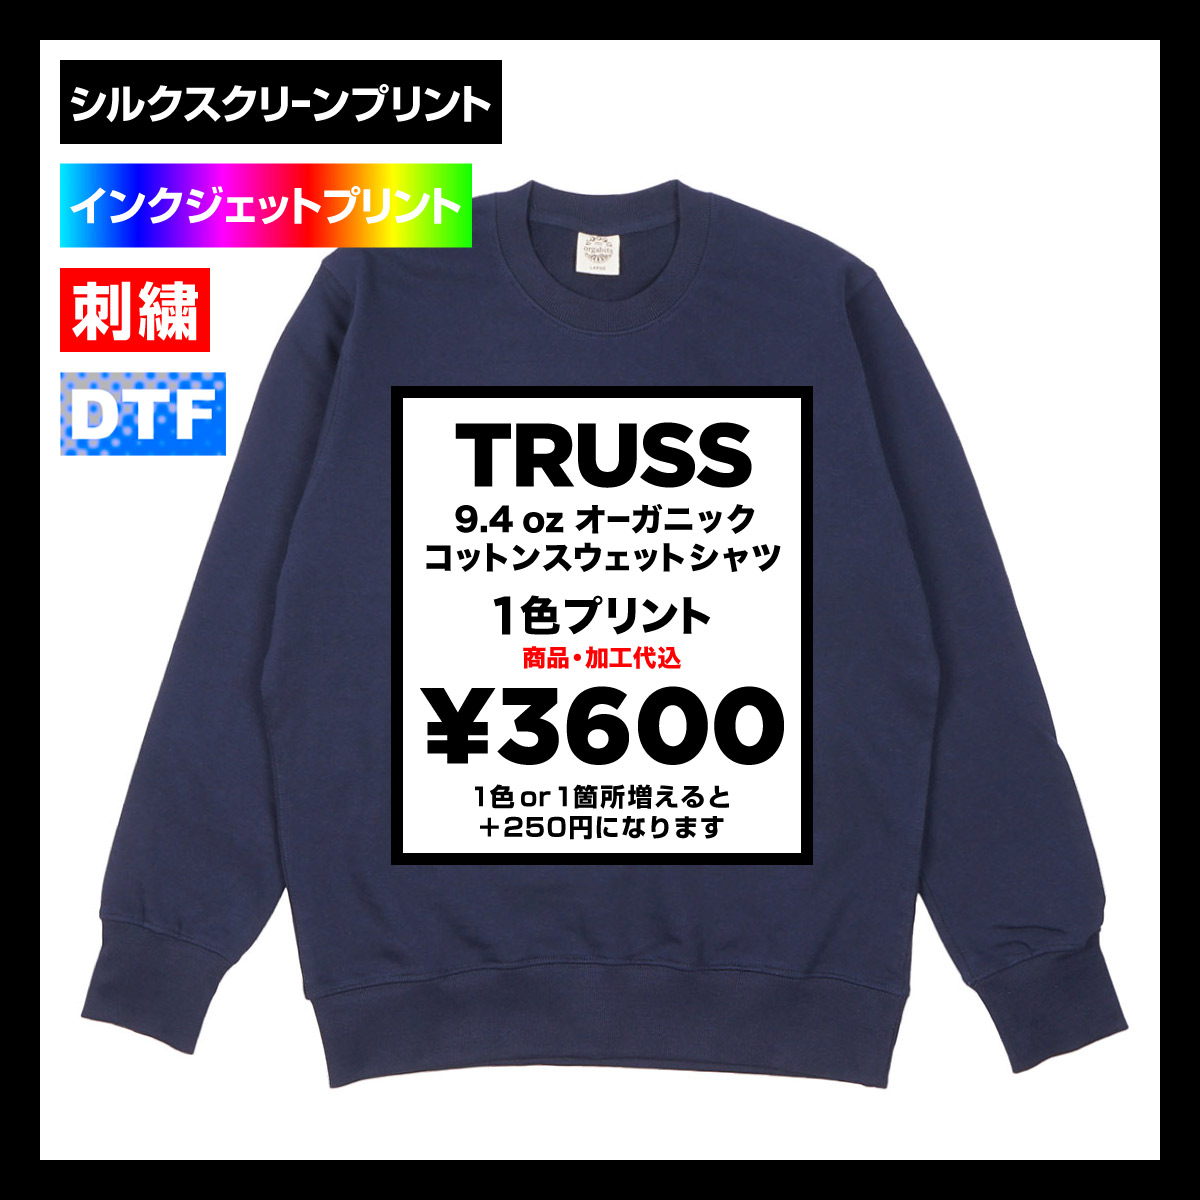 TRUSS トラス 9.4 oz オーガニックコットンスウェットシャツ (品番OGS-915)